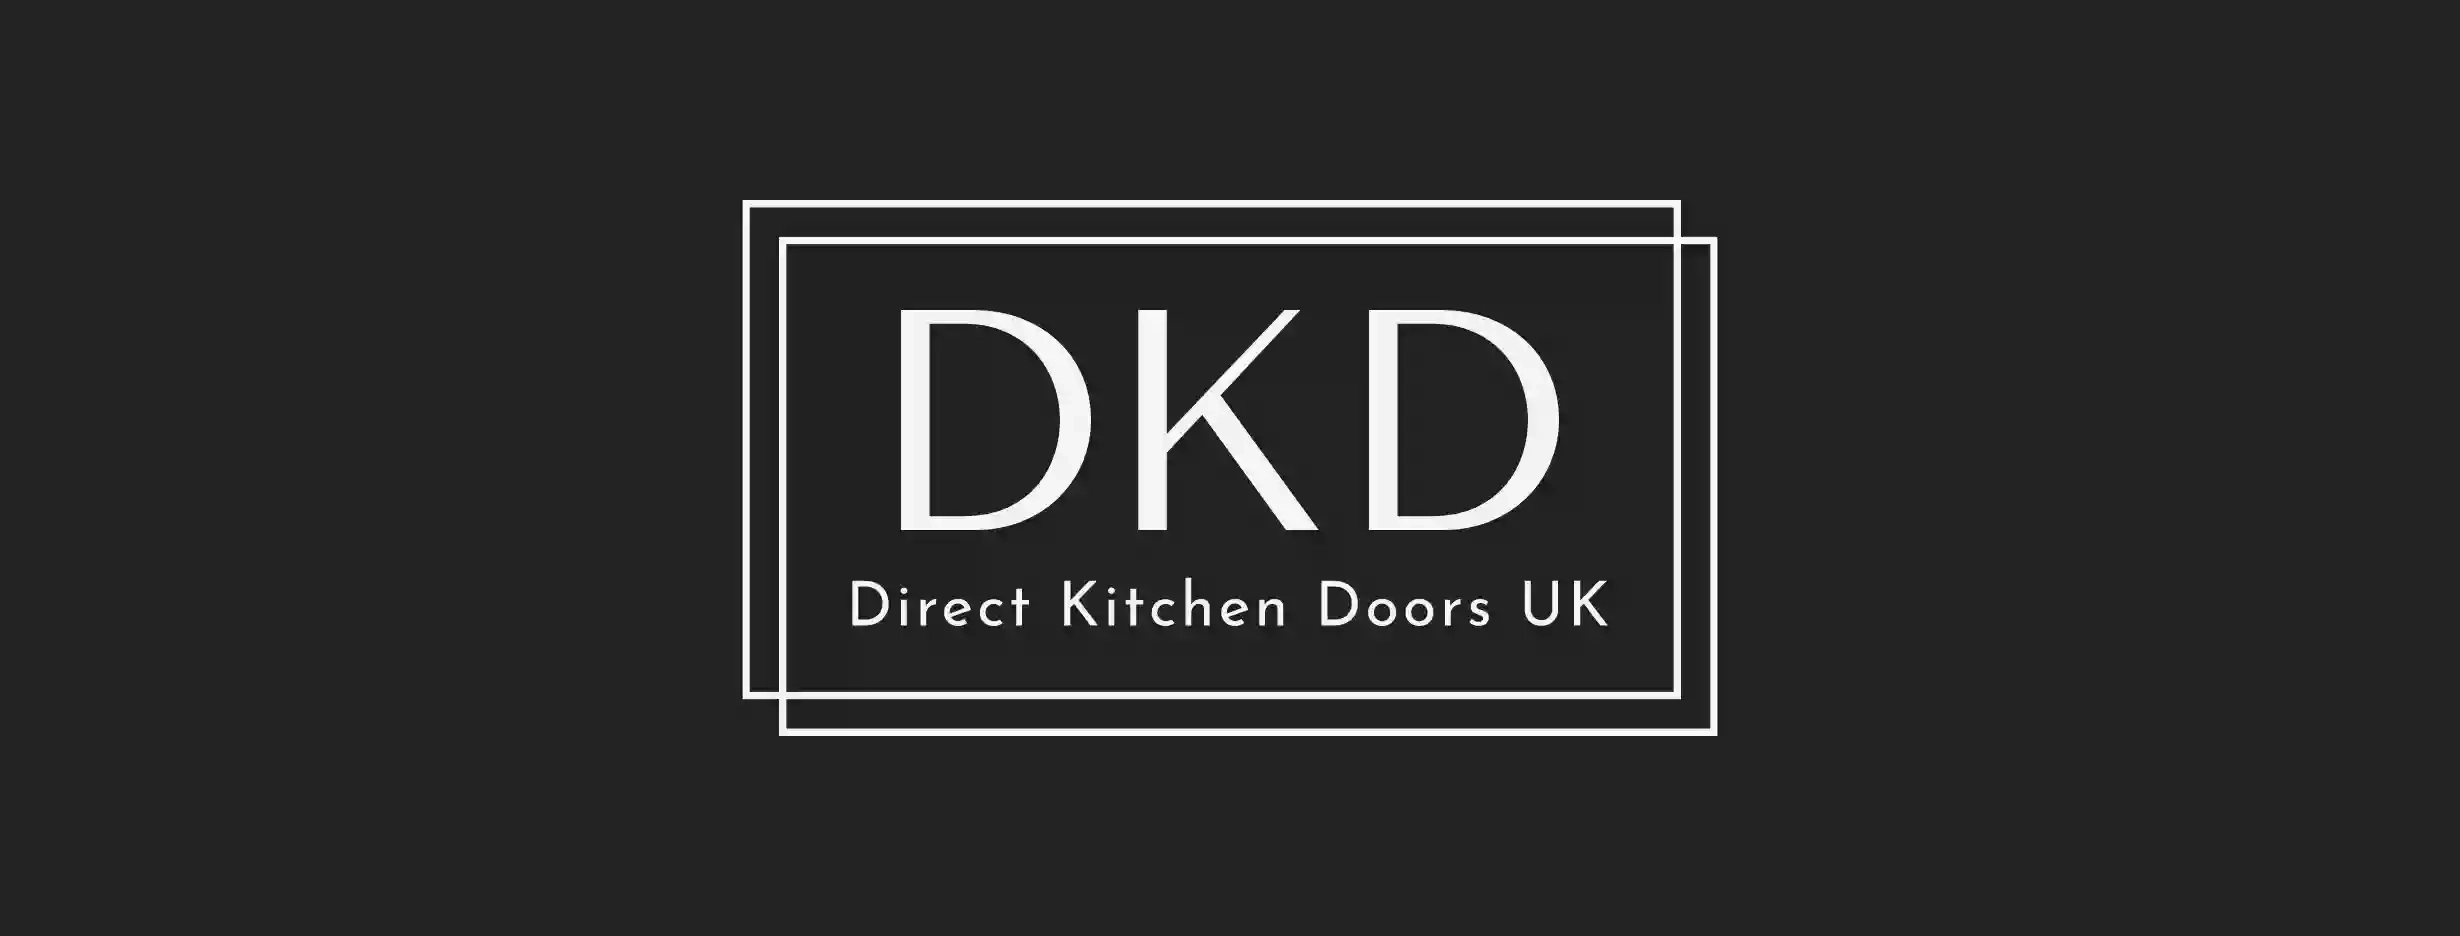 Direct Kitchen Doors UK